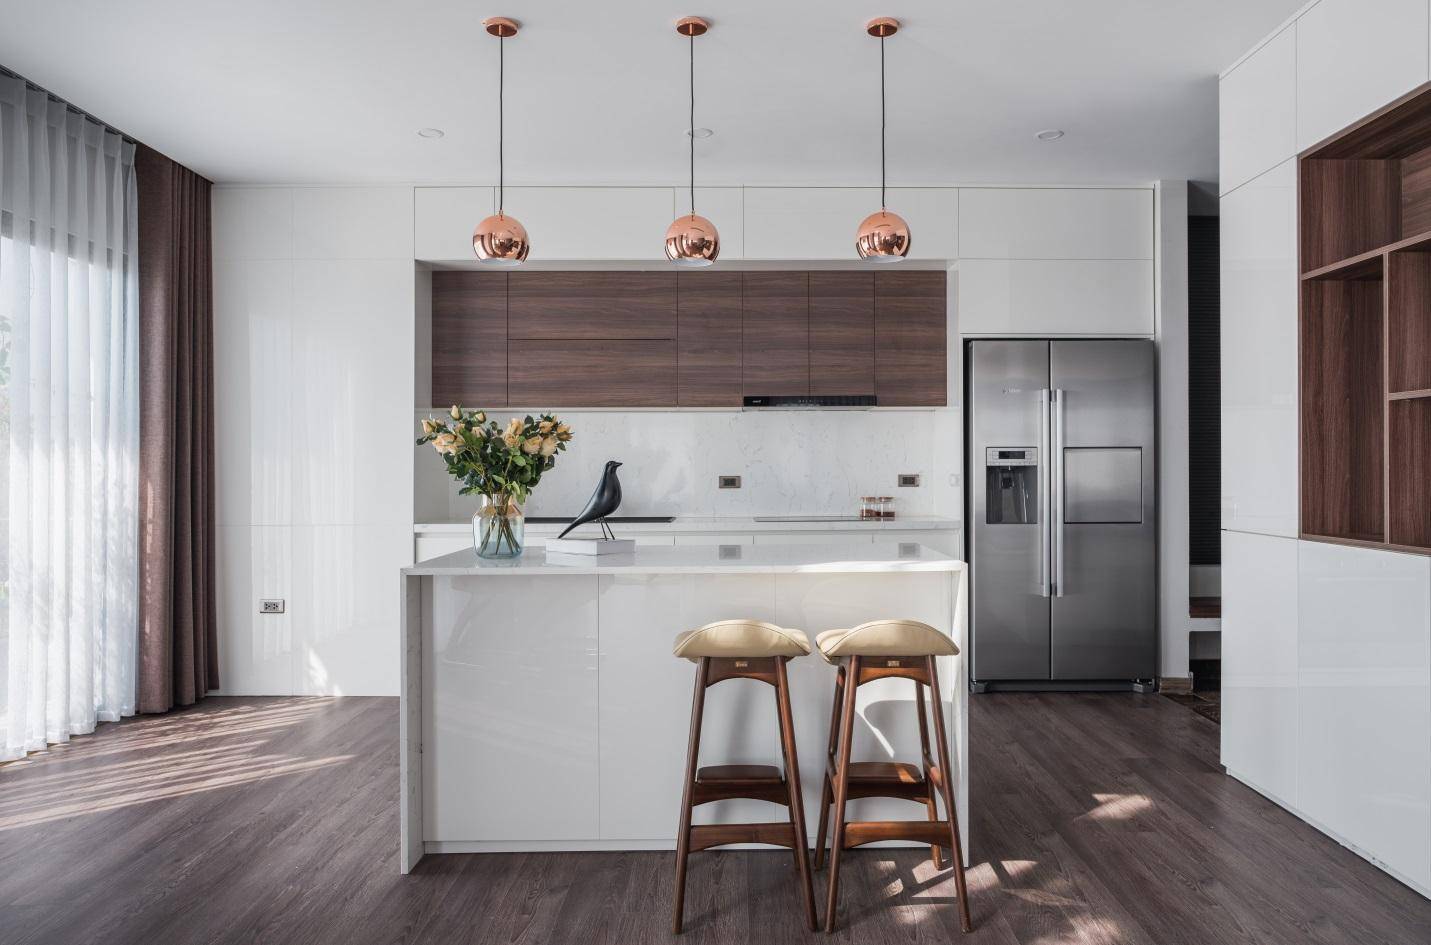 Gợi ý thiết kế phòng bếp theo Phong cách tối giản